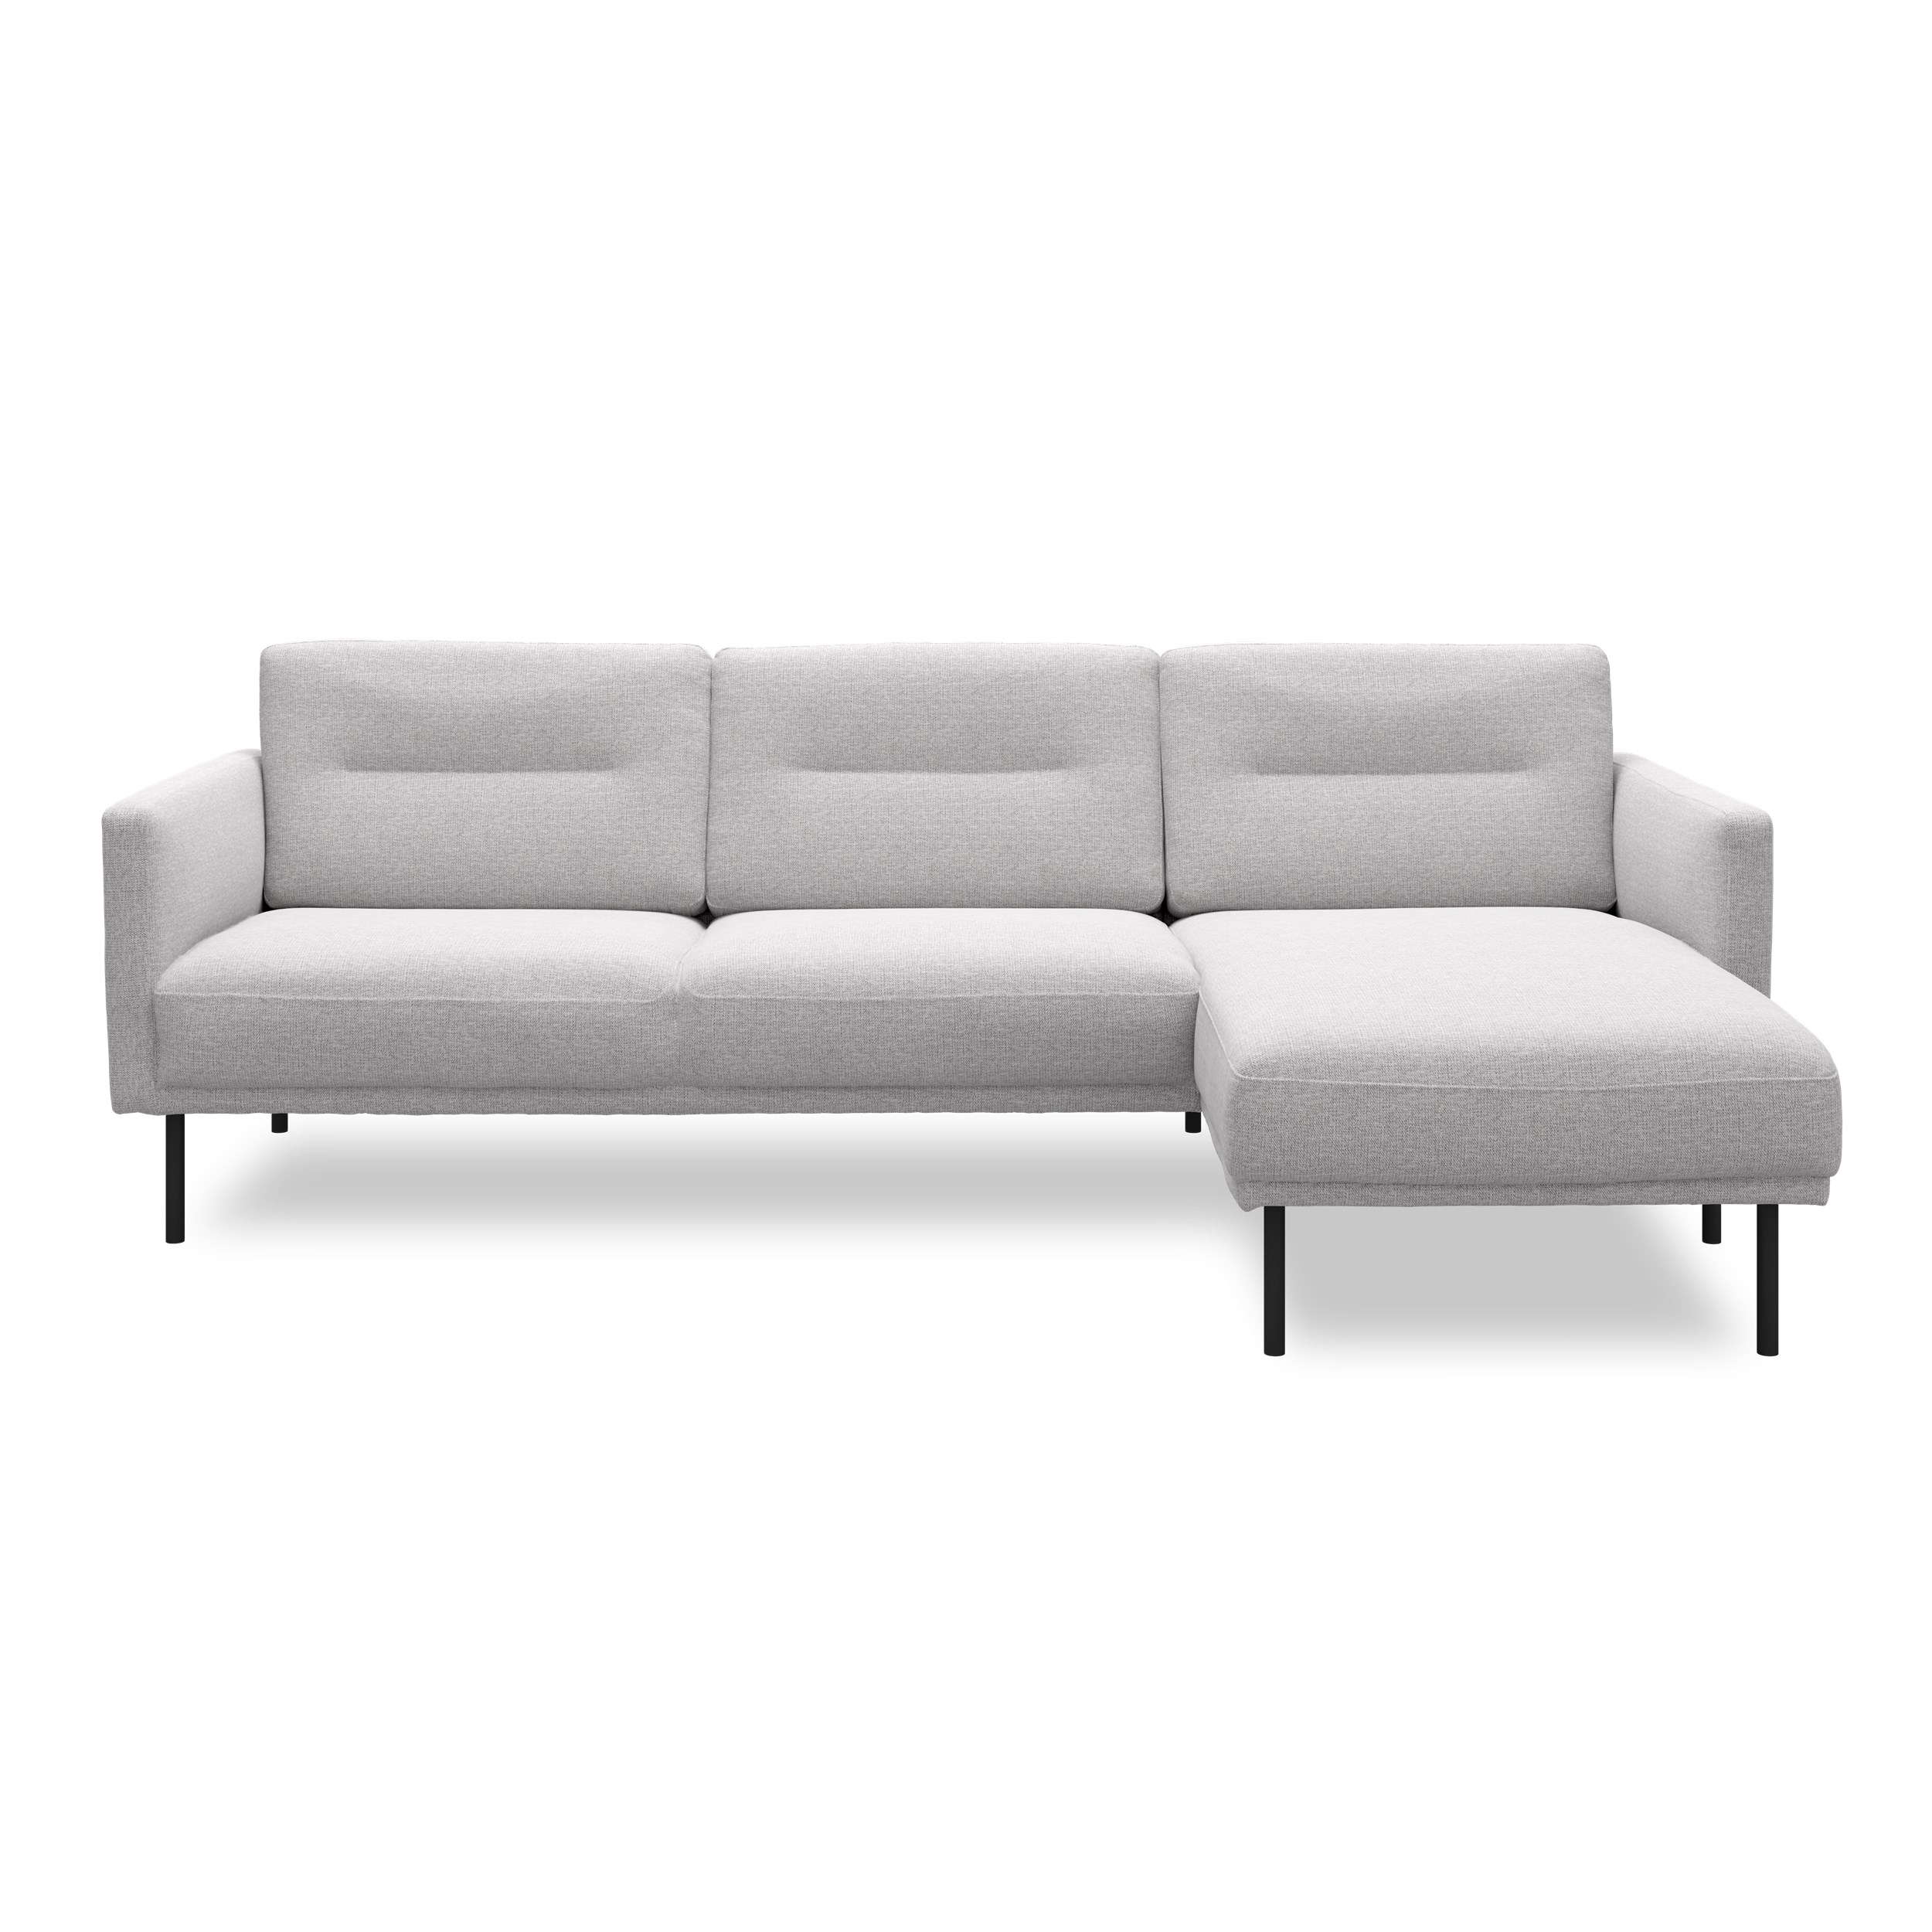 Larvik højrevendt sofa med chaiselong - Hampton 372 Light grey stof og ben i sortlakeret metal